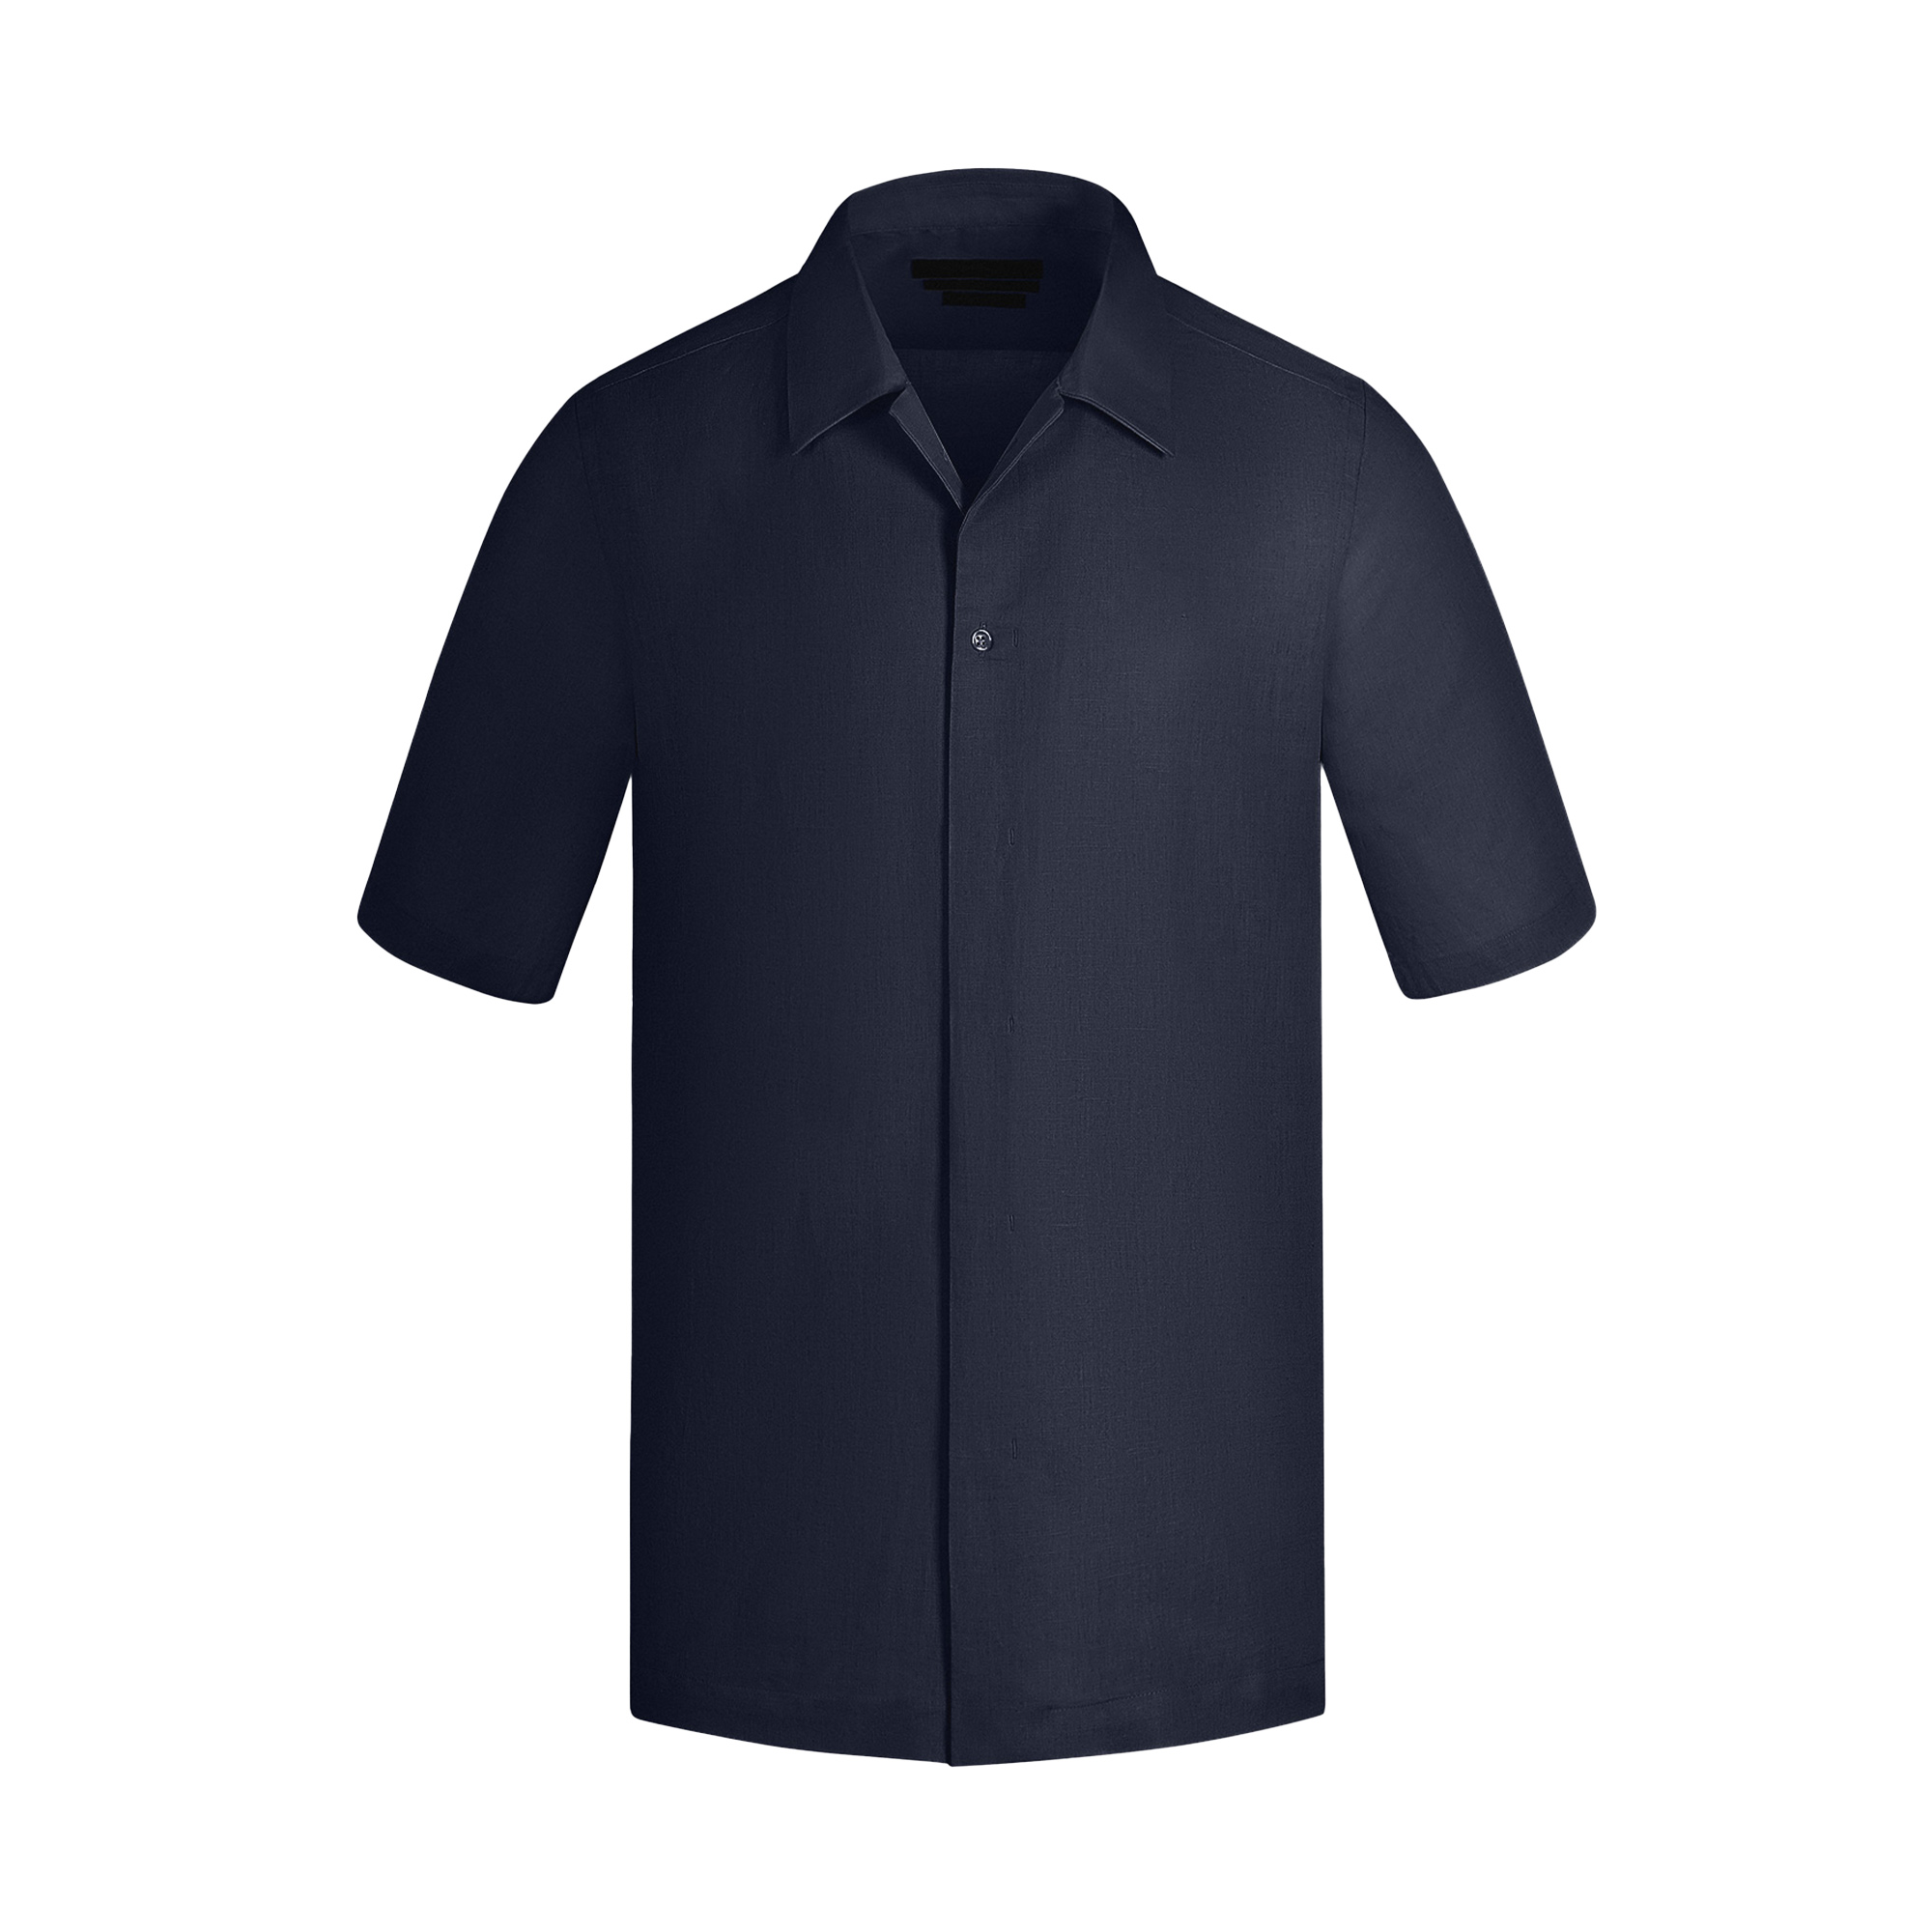 نکته خرید - قیمت روز پیراهن آستین کوتاه مردانه کروم مدل 2410113 خرید